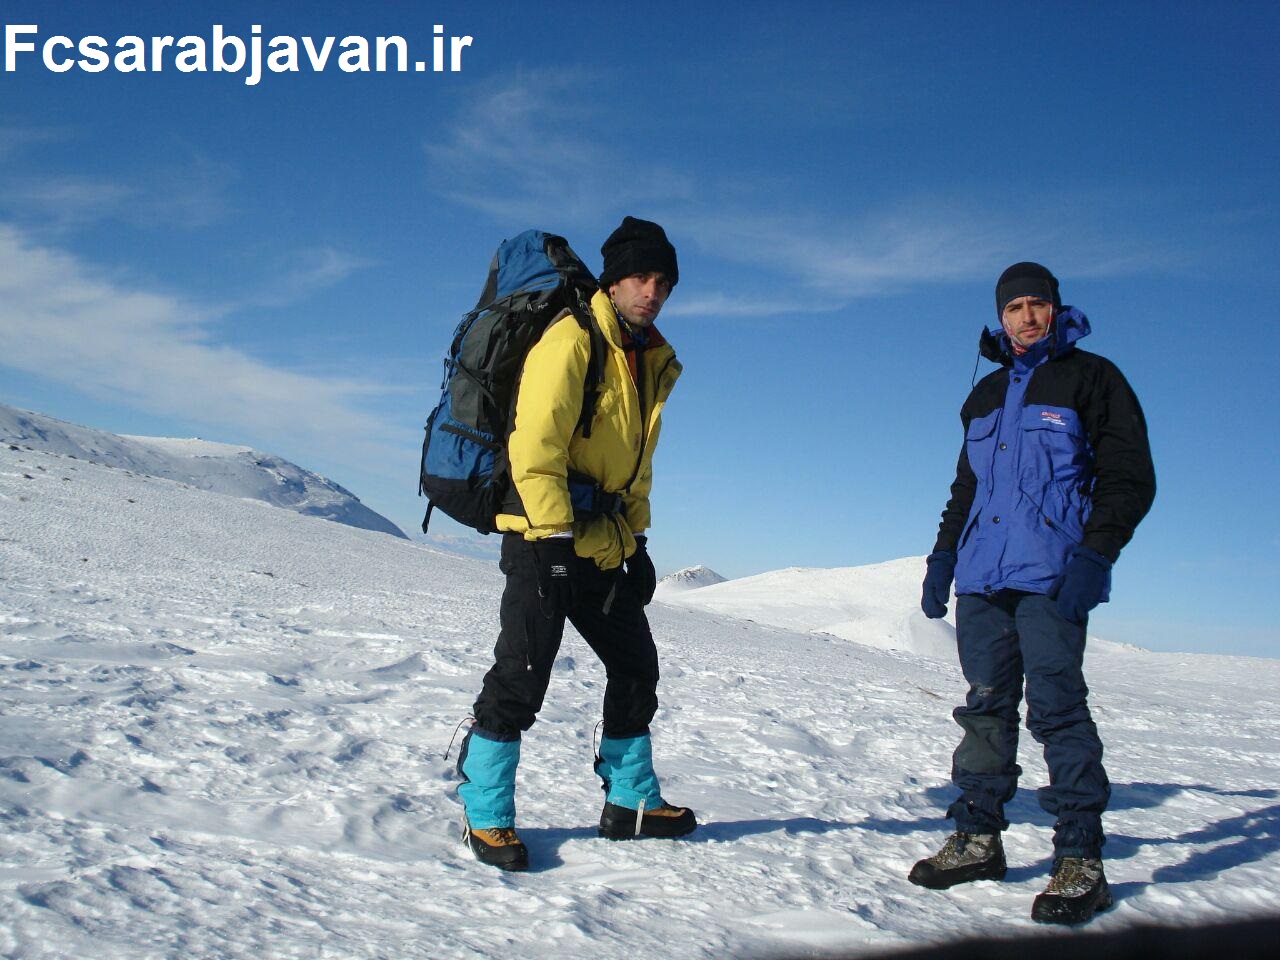 صعود دو تن از کوهنوردان سرابی به قله بزقوش از مسیر خط الراس